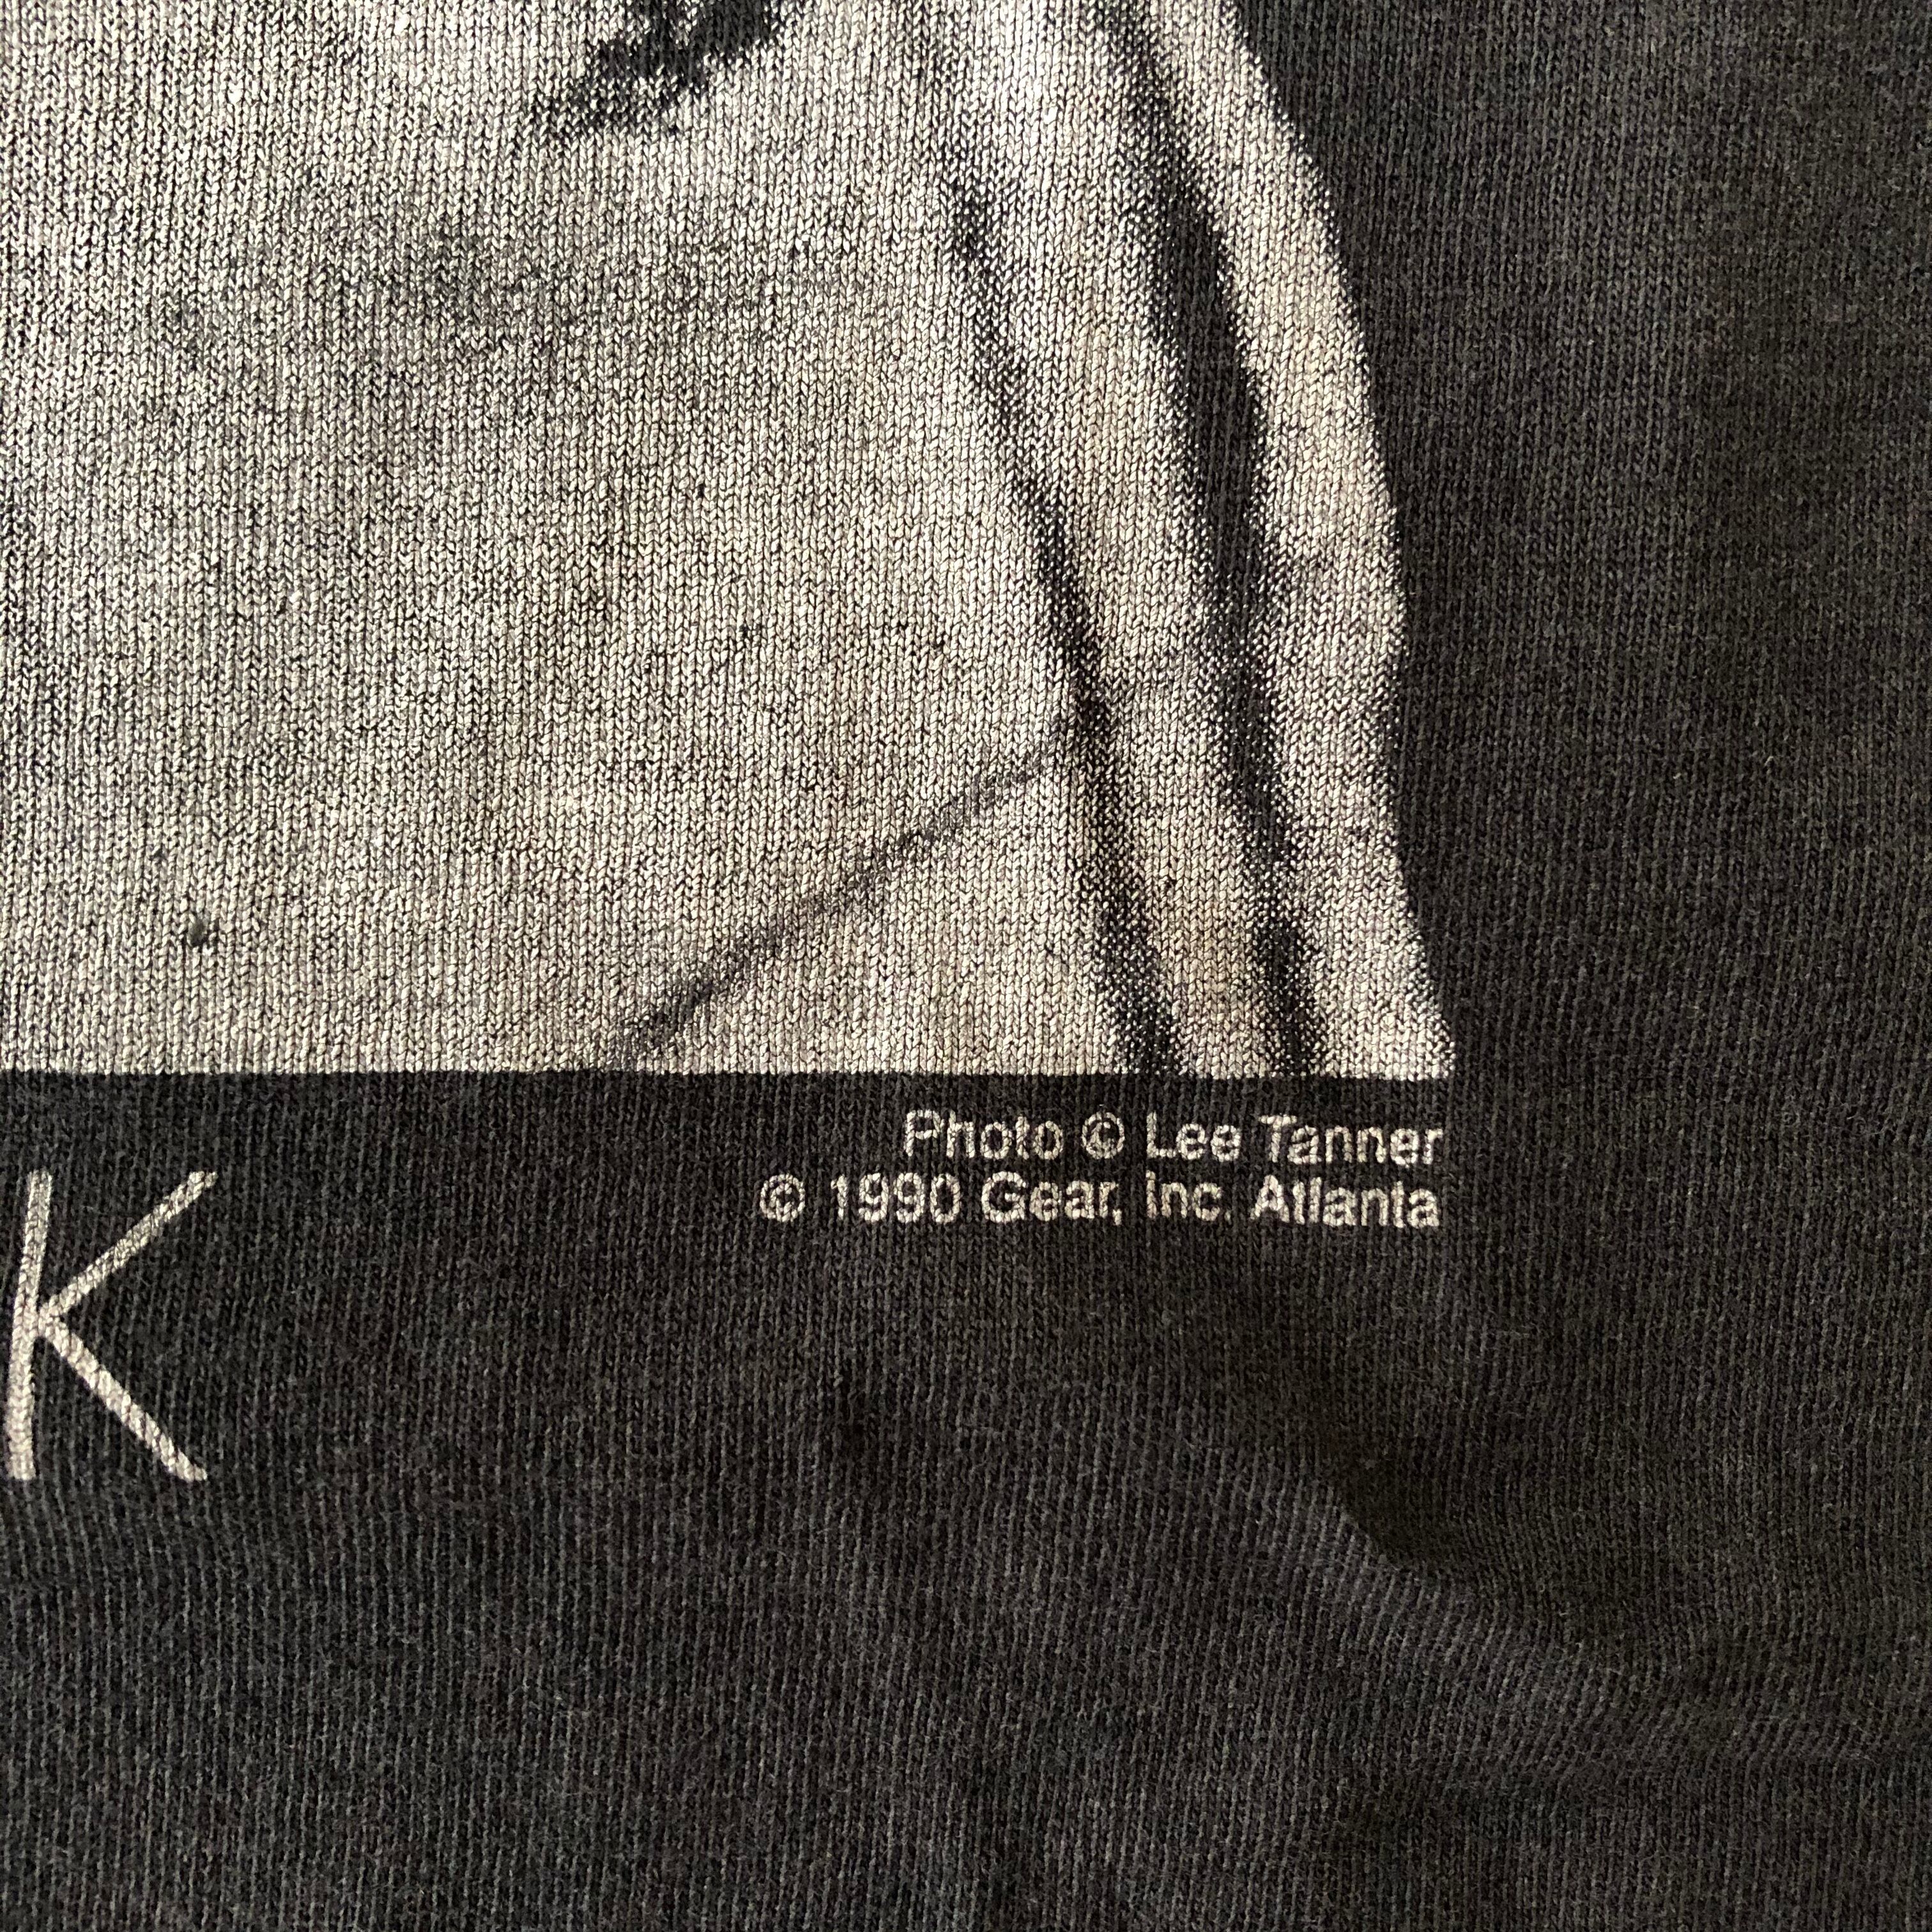 セロニアス・モンク　TheloniousMonk　gear inc  Tシャツ